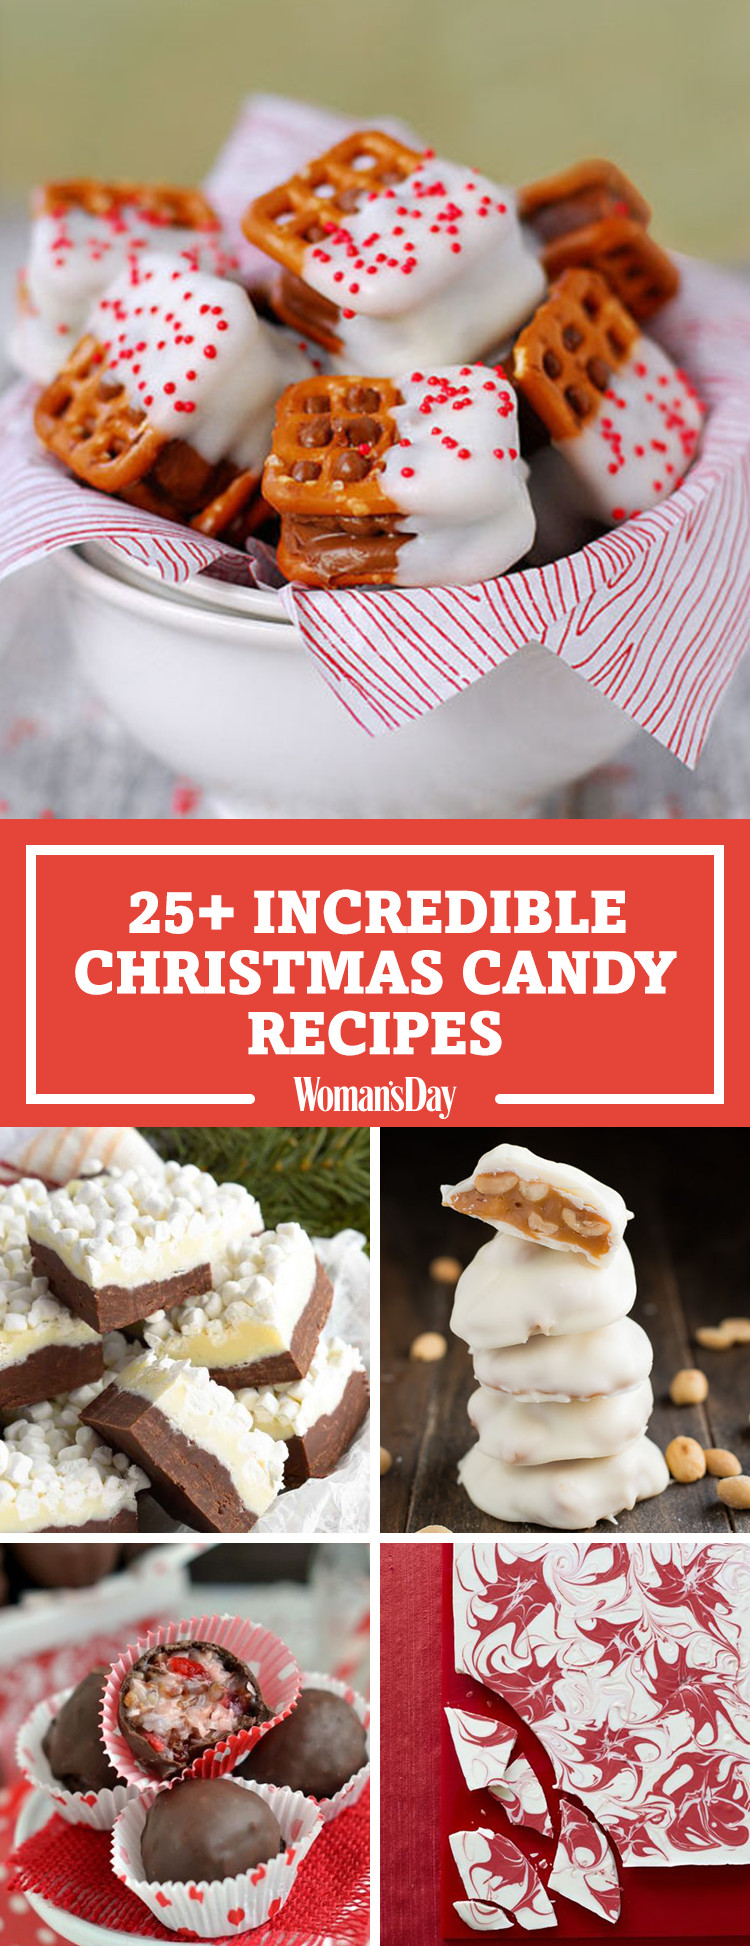 Chocolate Christmas Candy Recipes
 28 Homemade Christmas Candy Recipes How To Make Your Own